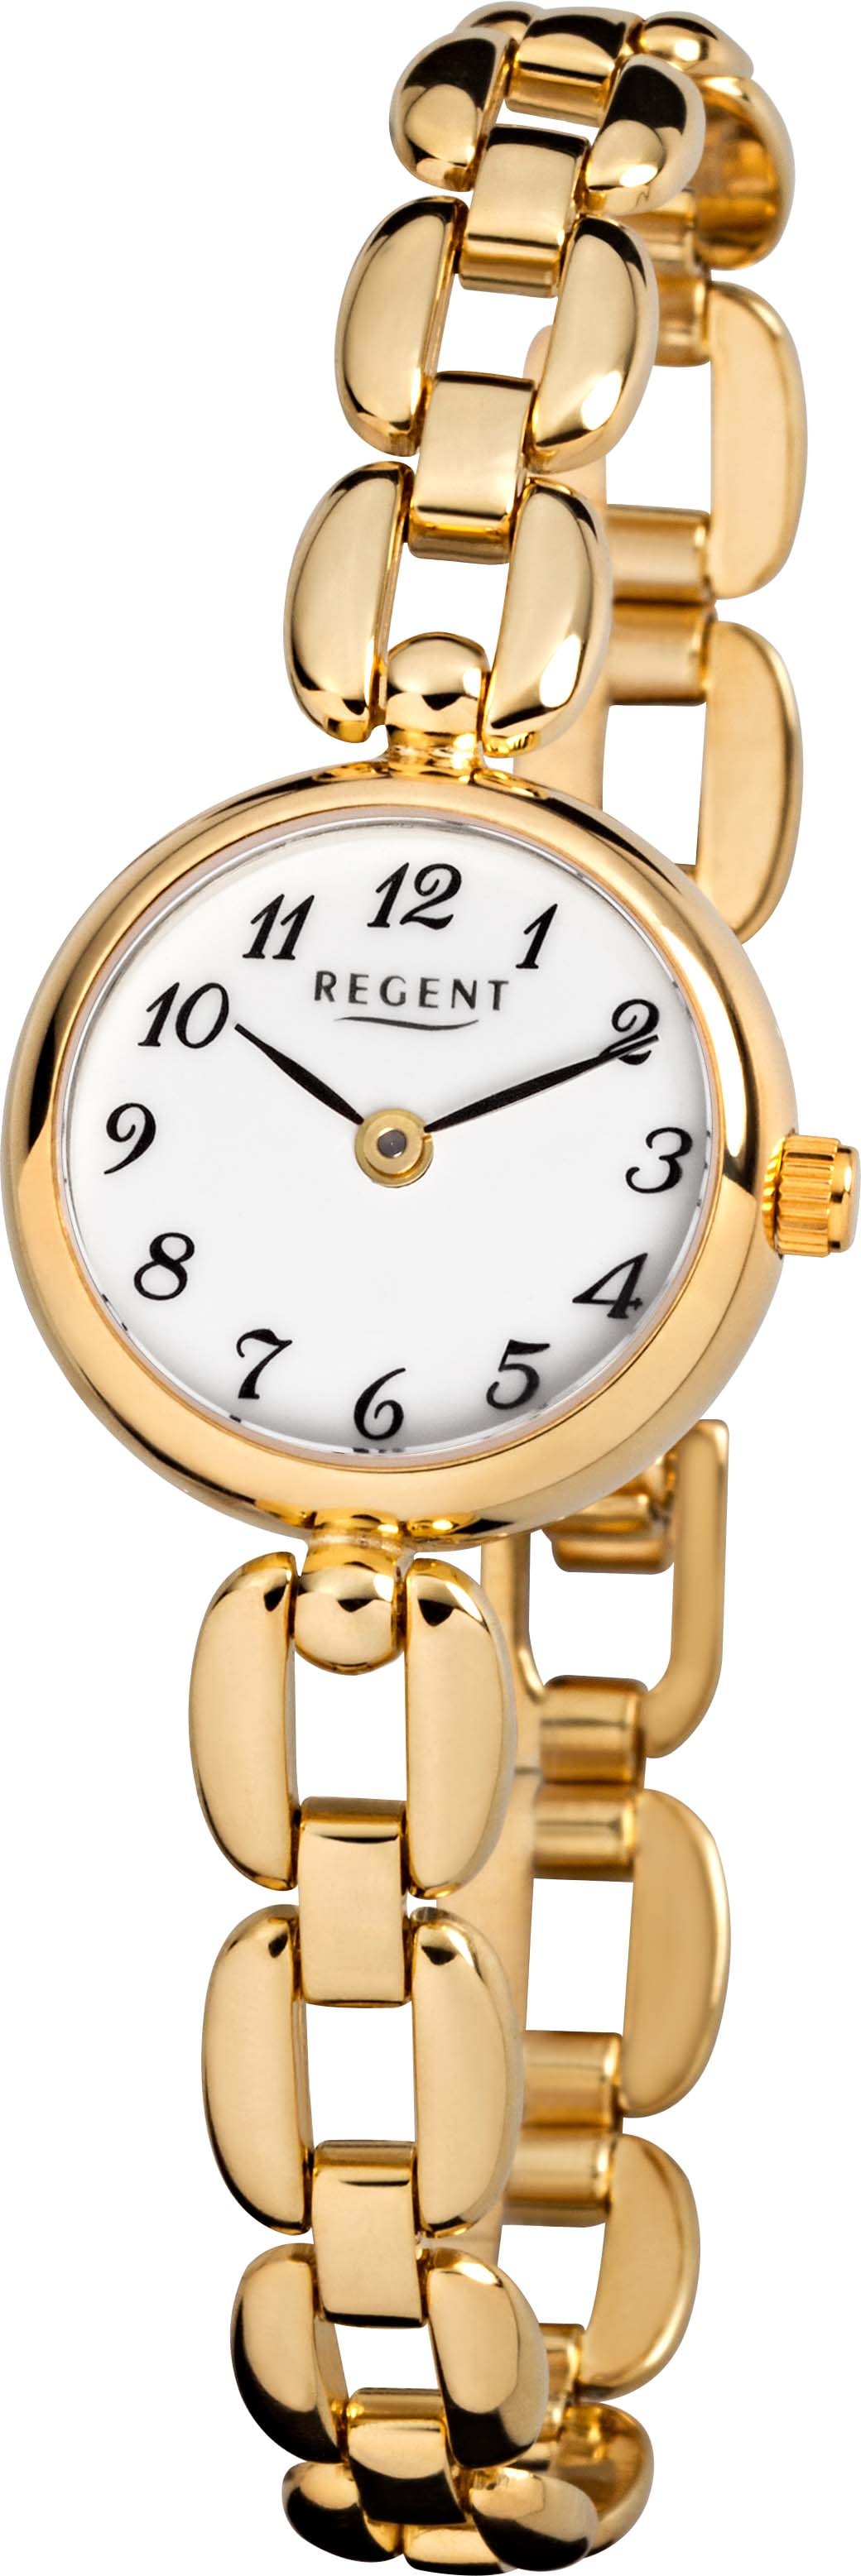 Regent Quarzuhr »F-1400 - 3275.45.99«, Armbanduhr, Damenuhr, Mineralglas